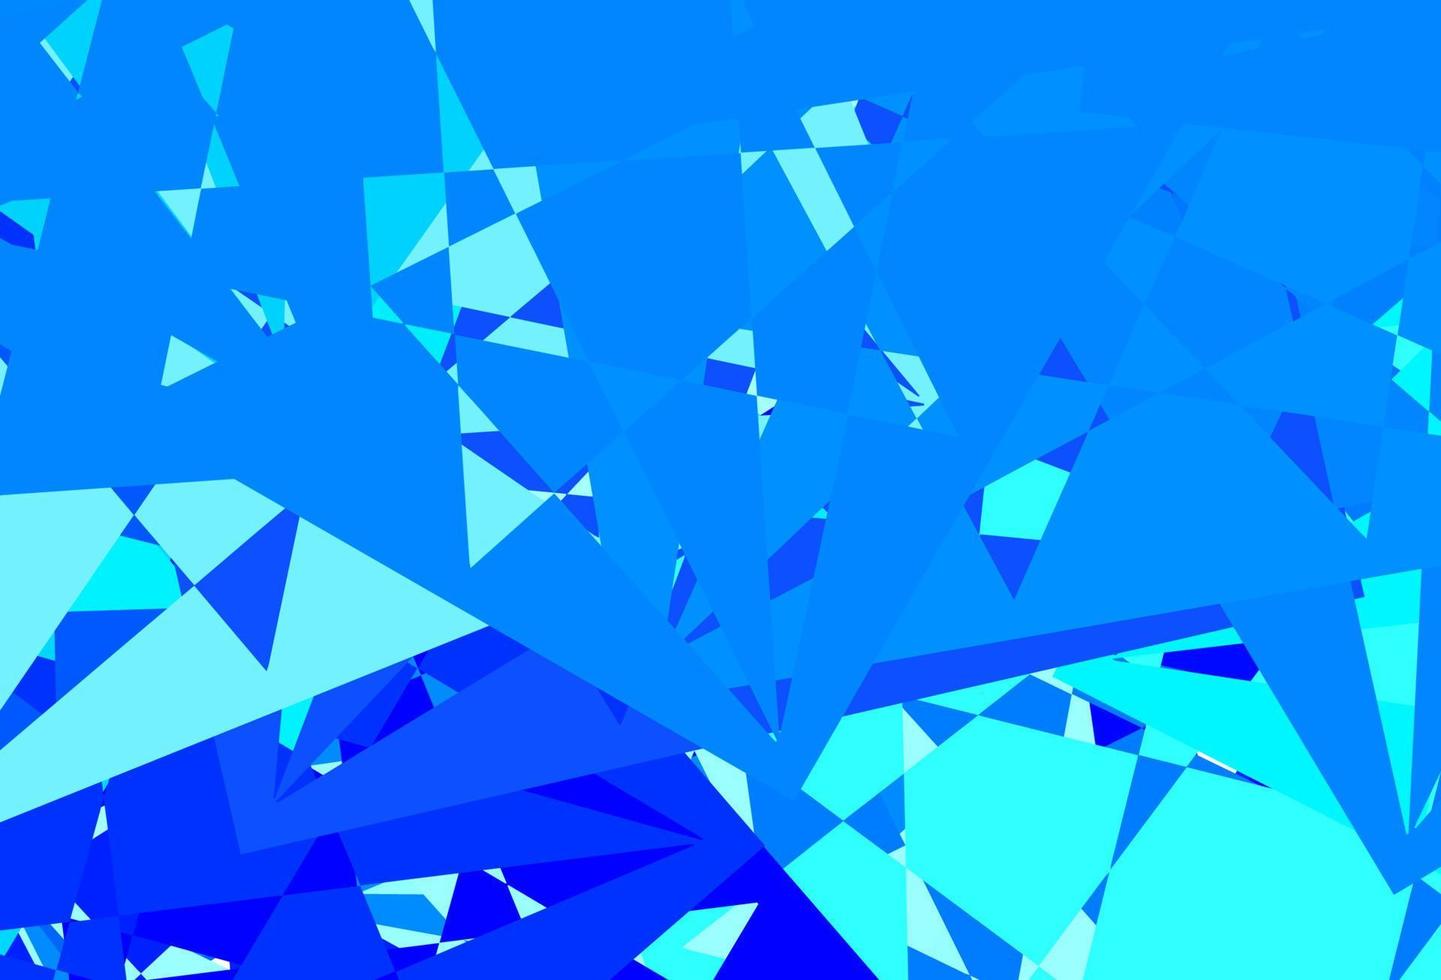 modelo de vetor azul claro com formas de triângulo.